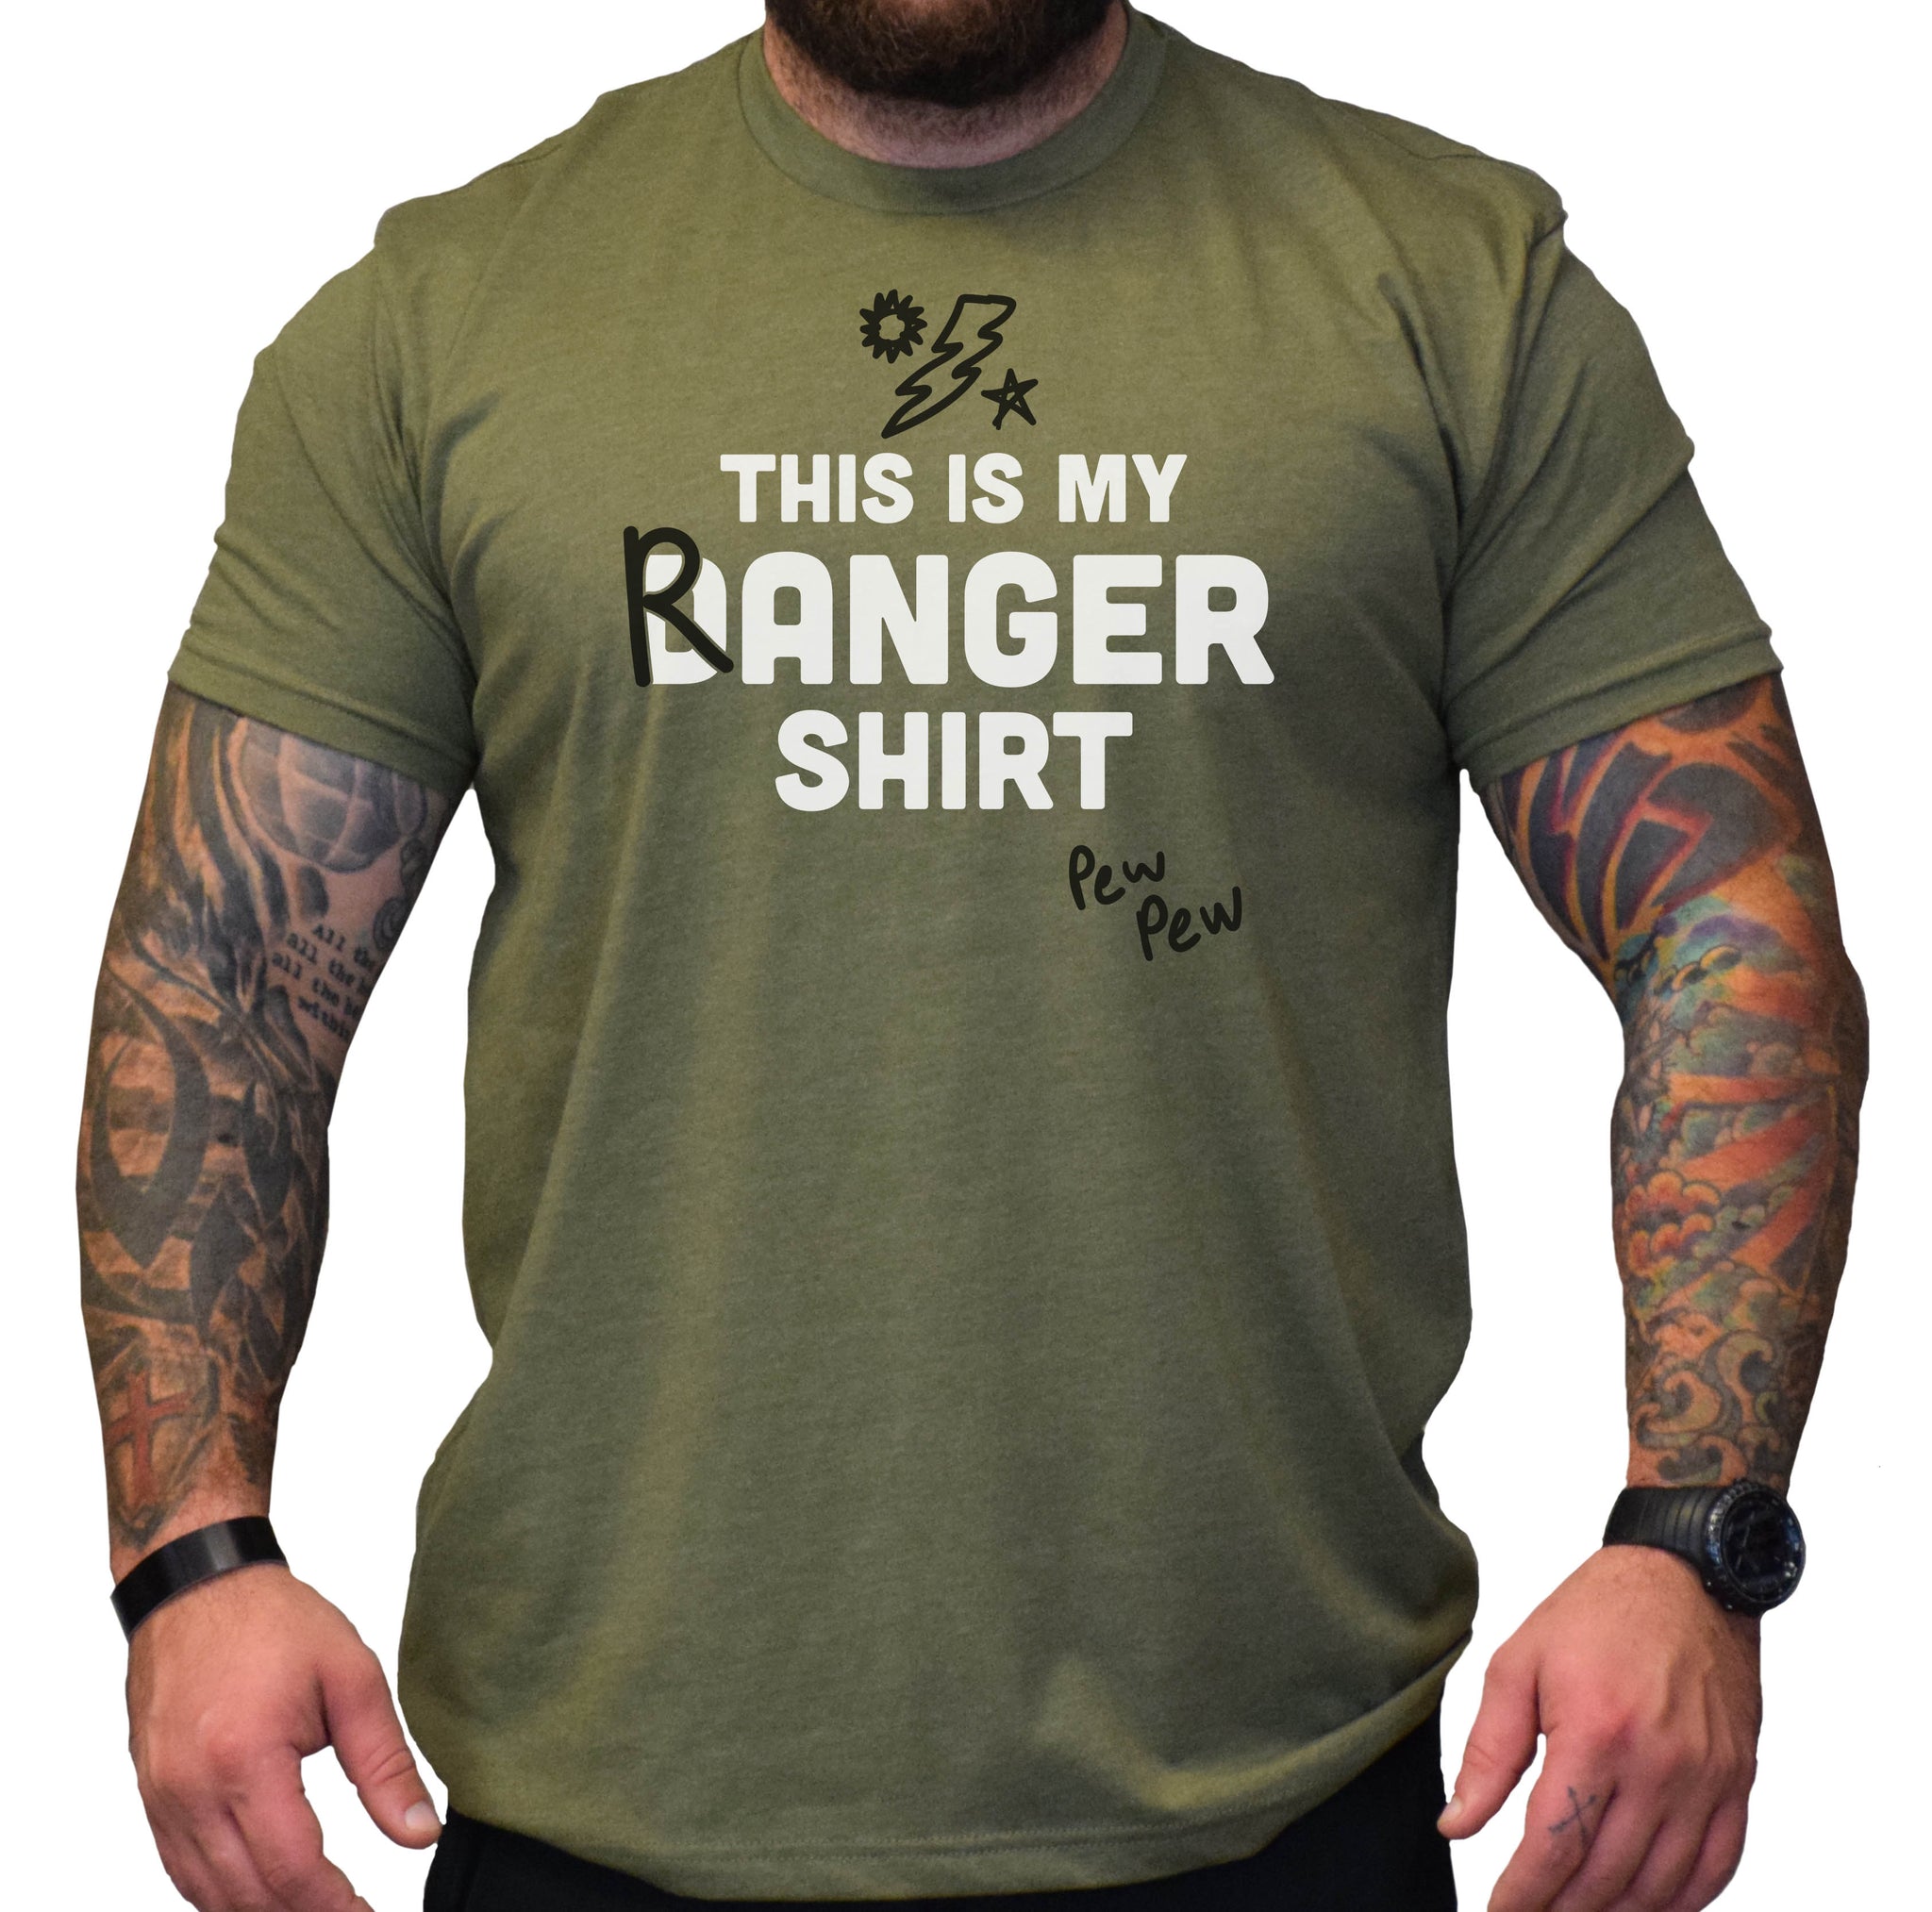 Ranger Danger